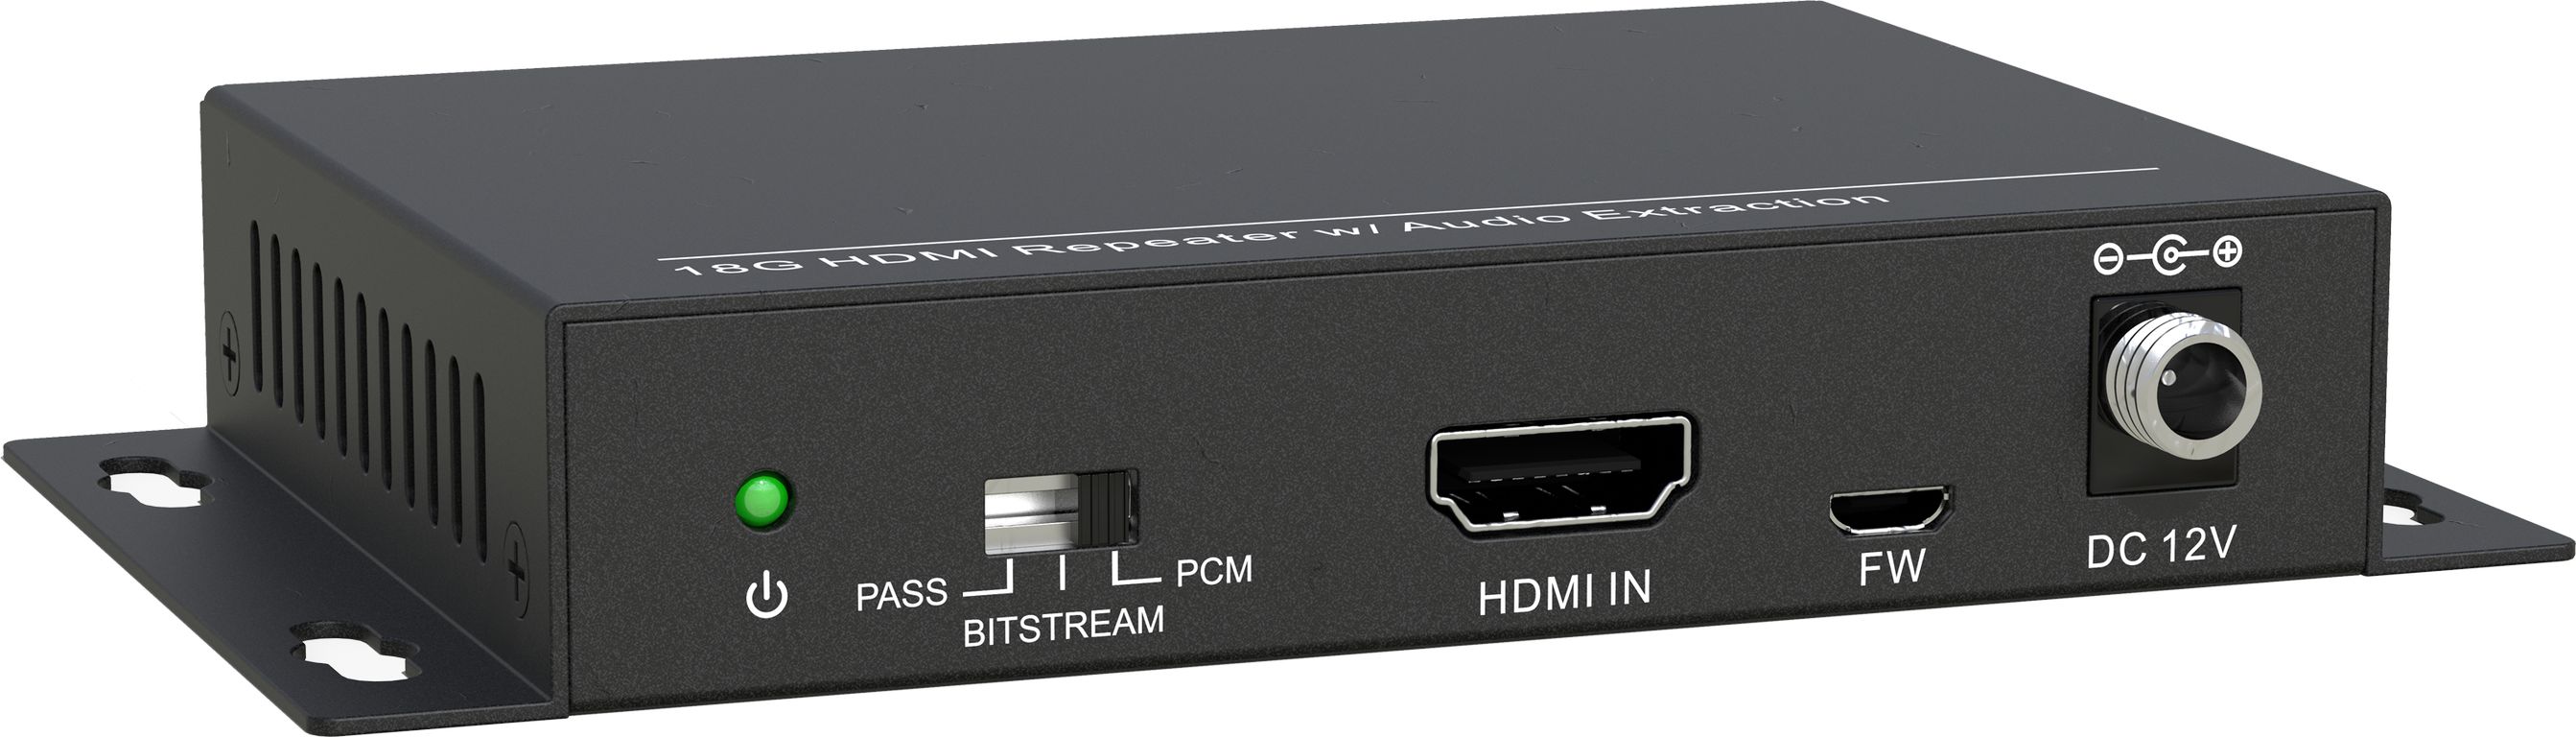 HDMI коммутаторы, разветвители, повторители Digis SS-AC1-4K2 hdmi коммутаторы разветвители повторители dr hd sw 417 sla